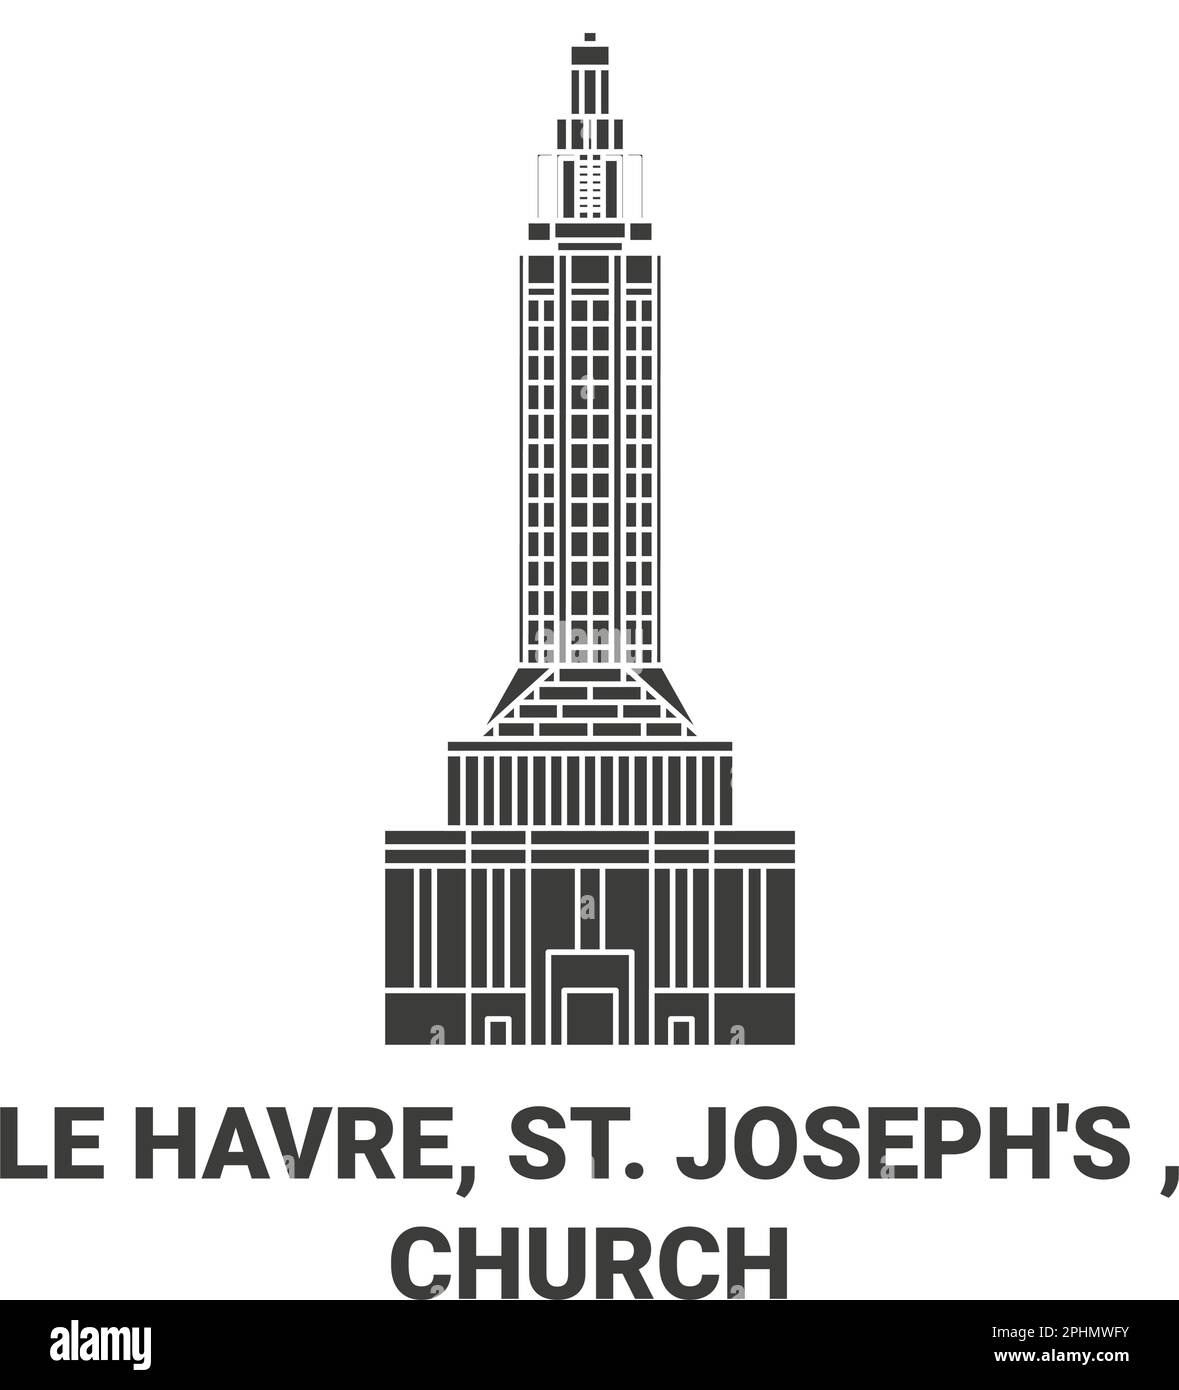 Frankreich, Le Havre, St. Joseph's, Wegweiser-Vektordarstellung der Kirche Stock Vektor